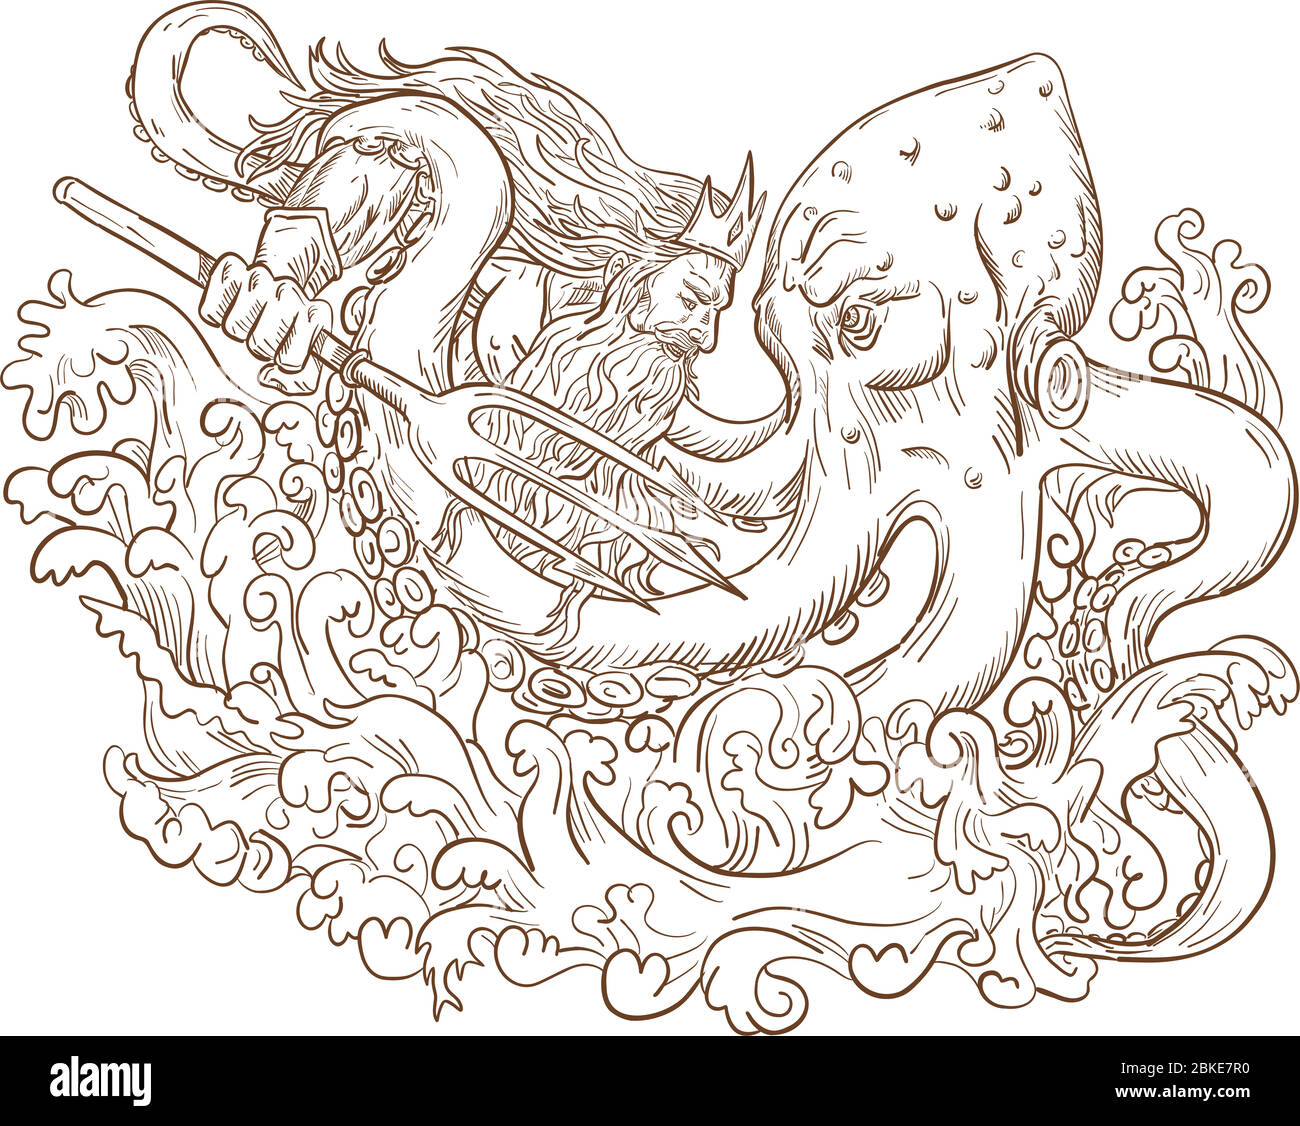 Disegno disegno disegno disegno stile illustrazione del dio romano Nettuno o Poseidone, dio greco del mare, con tridente e corona che combatte un Kraken, polpo gigante su i Illustrazione Vettoriale